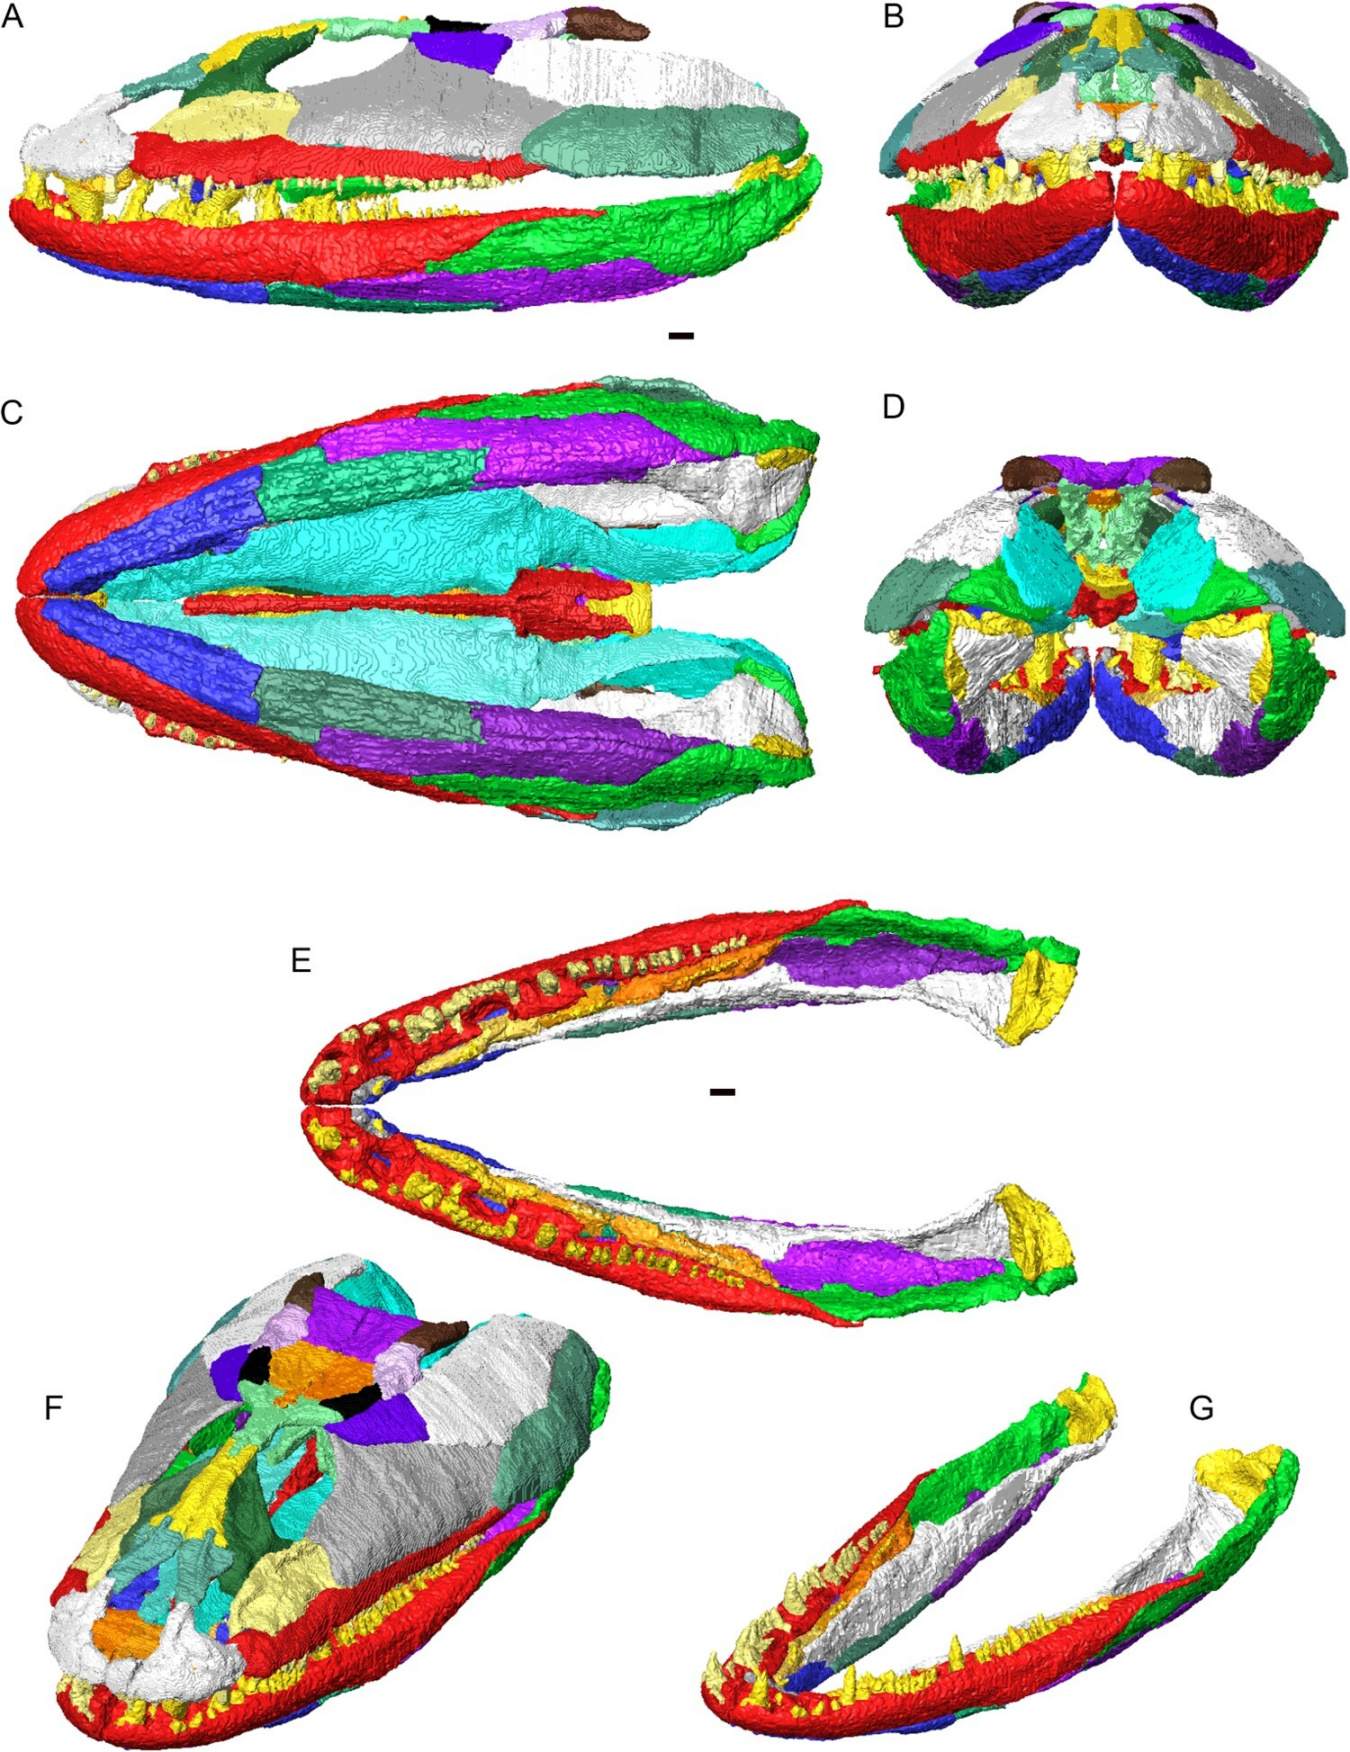 Reconstrução 3D do crânio e maxilar inferior de Crassigyrinus scoticus em articulação. Ossos individuais mostrados em cores diferentes. A, vista lateral esquerda; B, vista anterior; C, vista ventral; D, vista posterior; E, maxilar inferior articulado (sem crânio) em vista dorsal; F, crânio e maxilar inferior em visão dorsolateral oblíqua; G, maxilar inferior articulado em visão dorsolateral oblíqua.